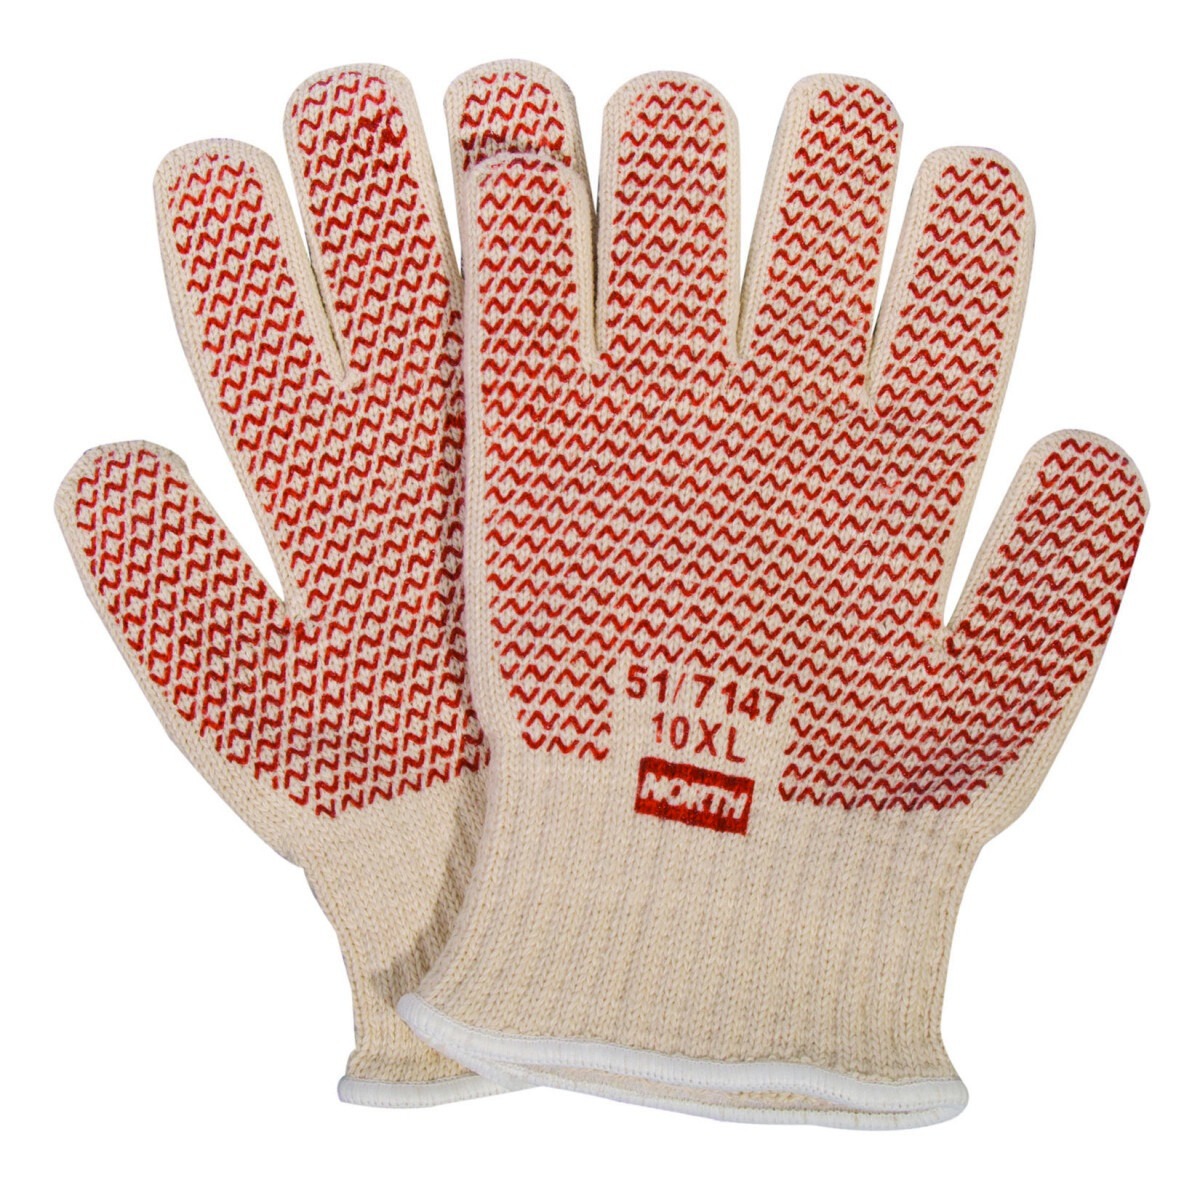 Перчатки для 7 лет. N51001-j перчатки. Перчатки n518. Перчатки хот грип. Перчатки Honeywell.